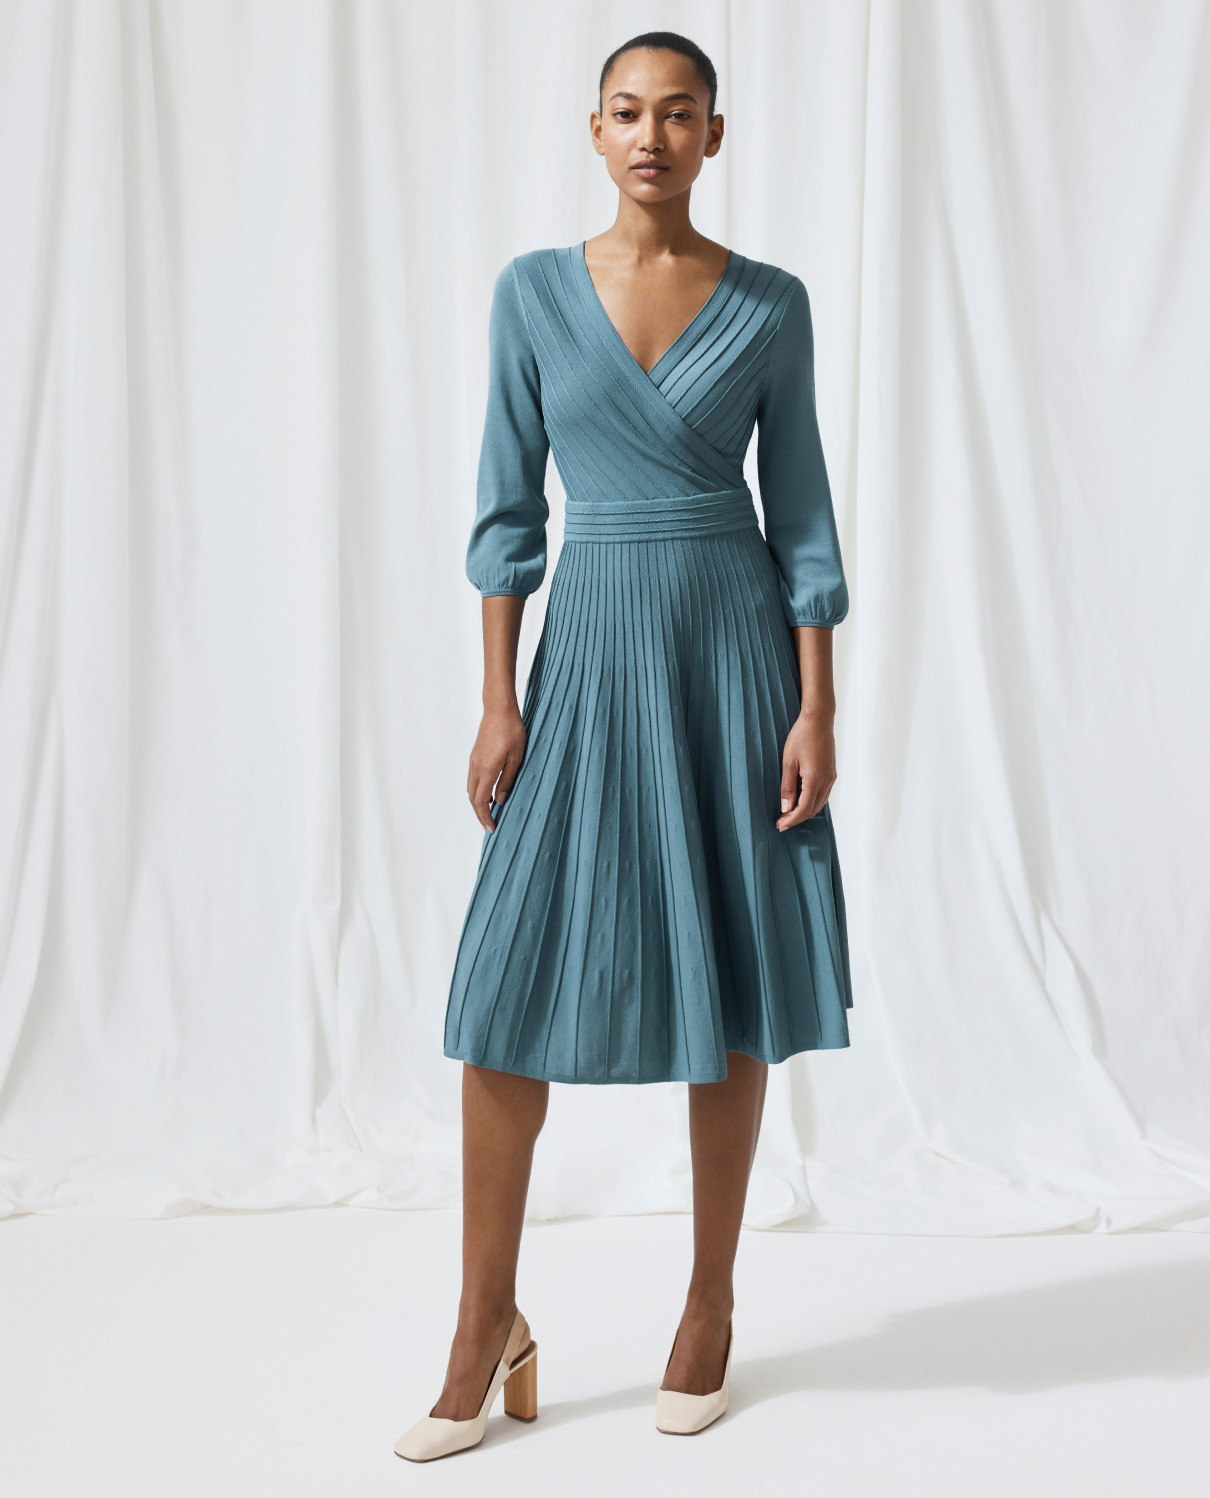 Model wearing lake blue Belluno dress